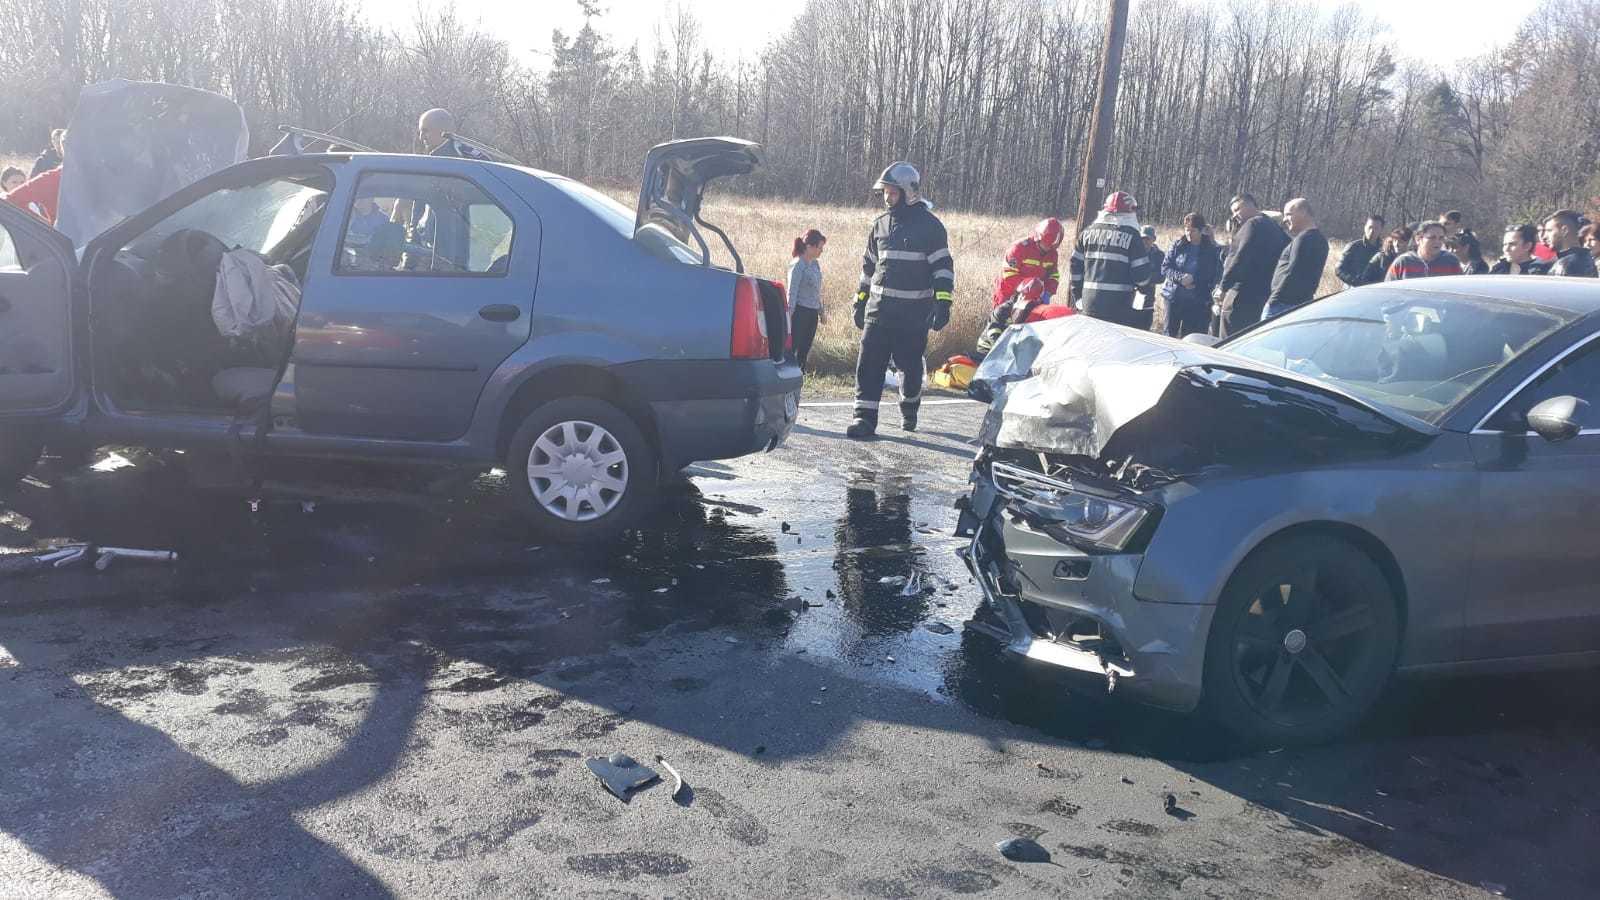 Poliţia Română: 15 accidente grave de circulaţie, în urma cărora 8 persoane au decedat, iar 12 au fost grav rănite, în a doua zi de Crăciun